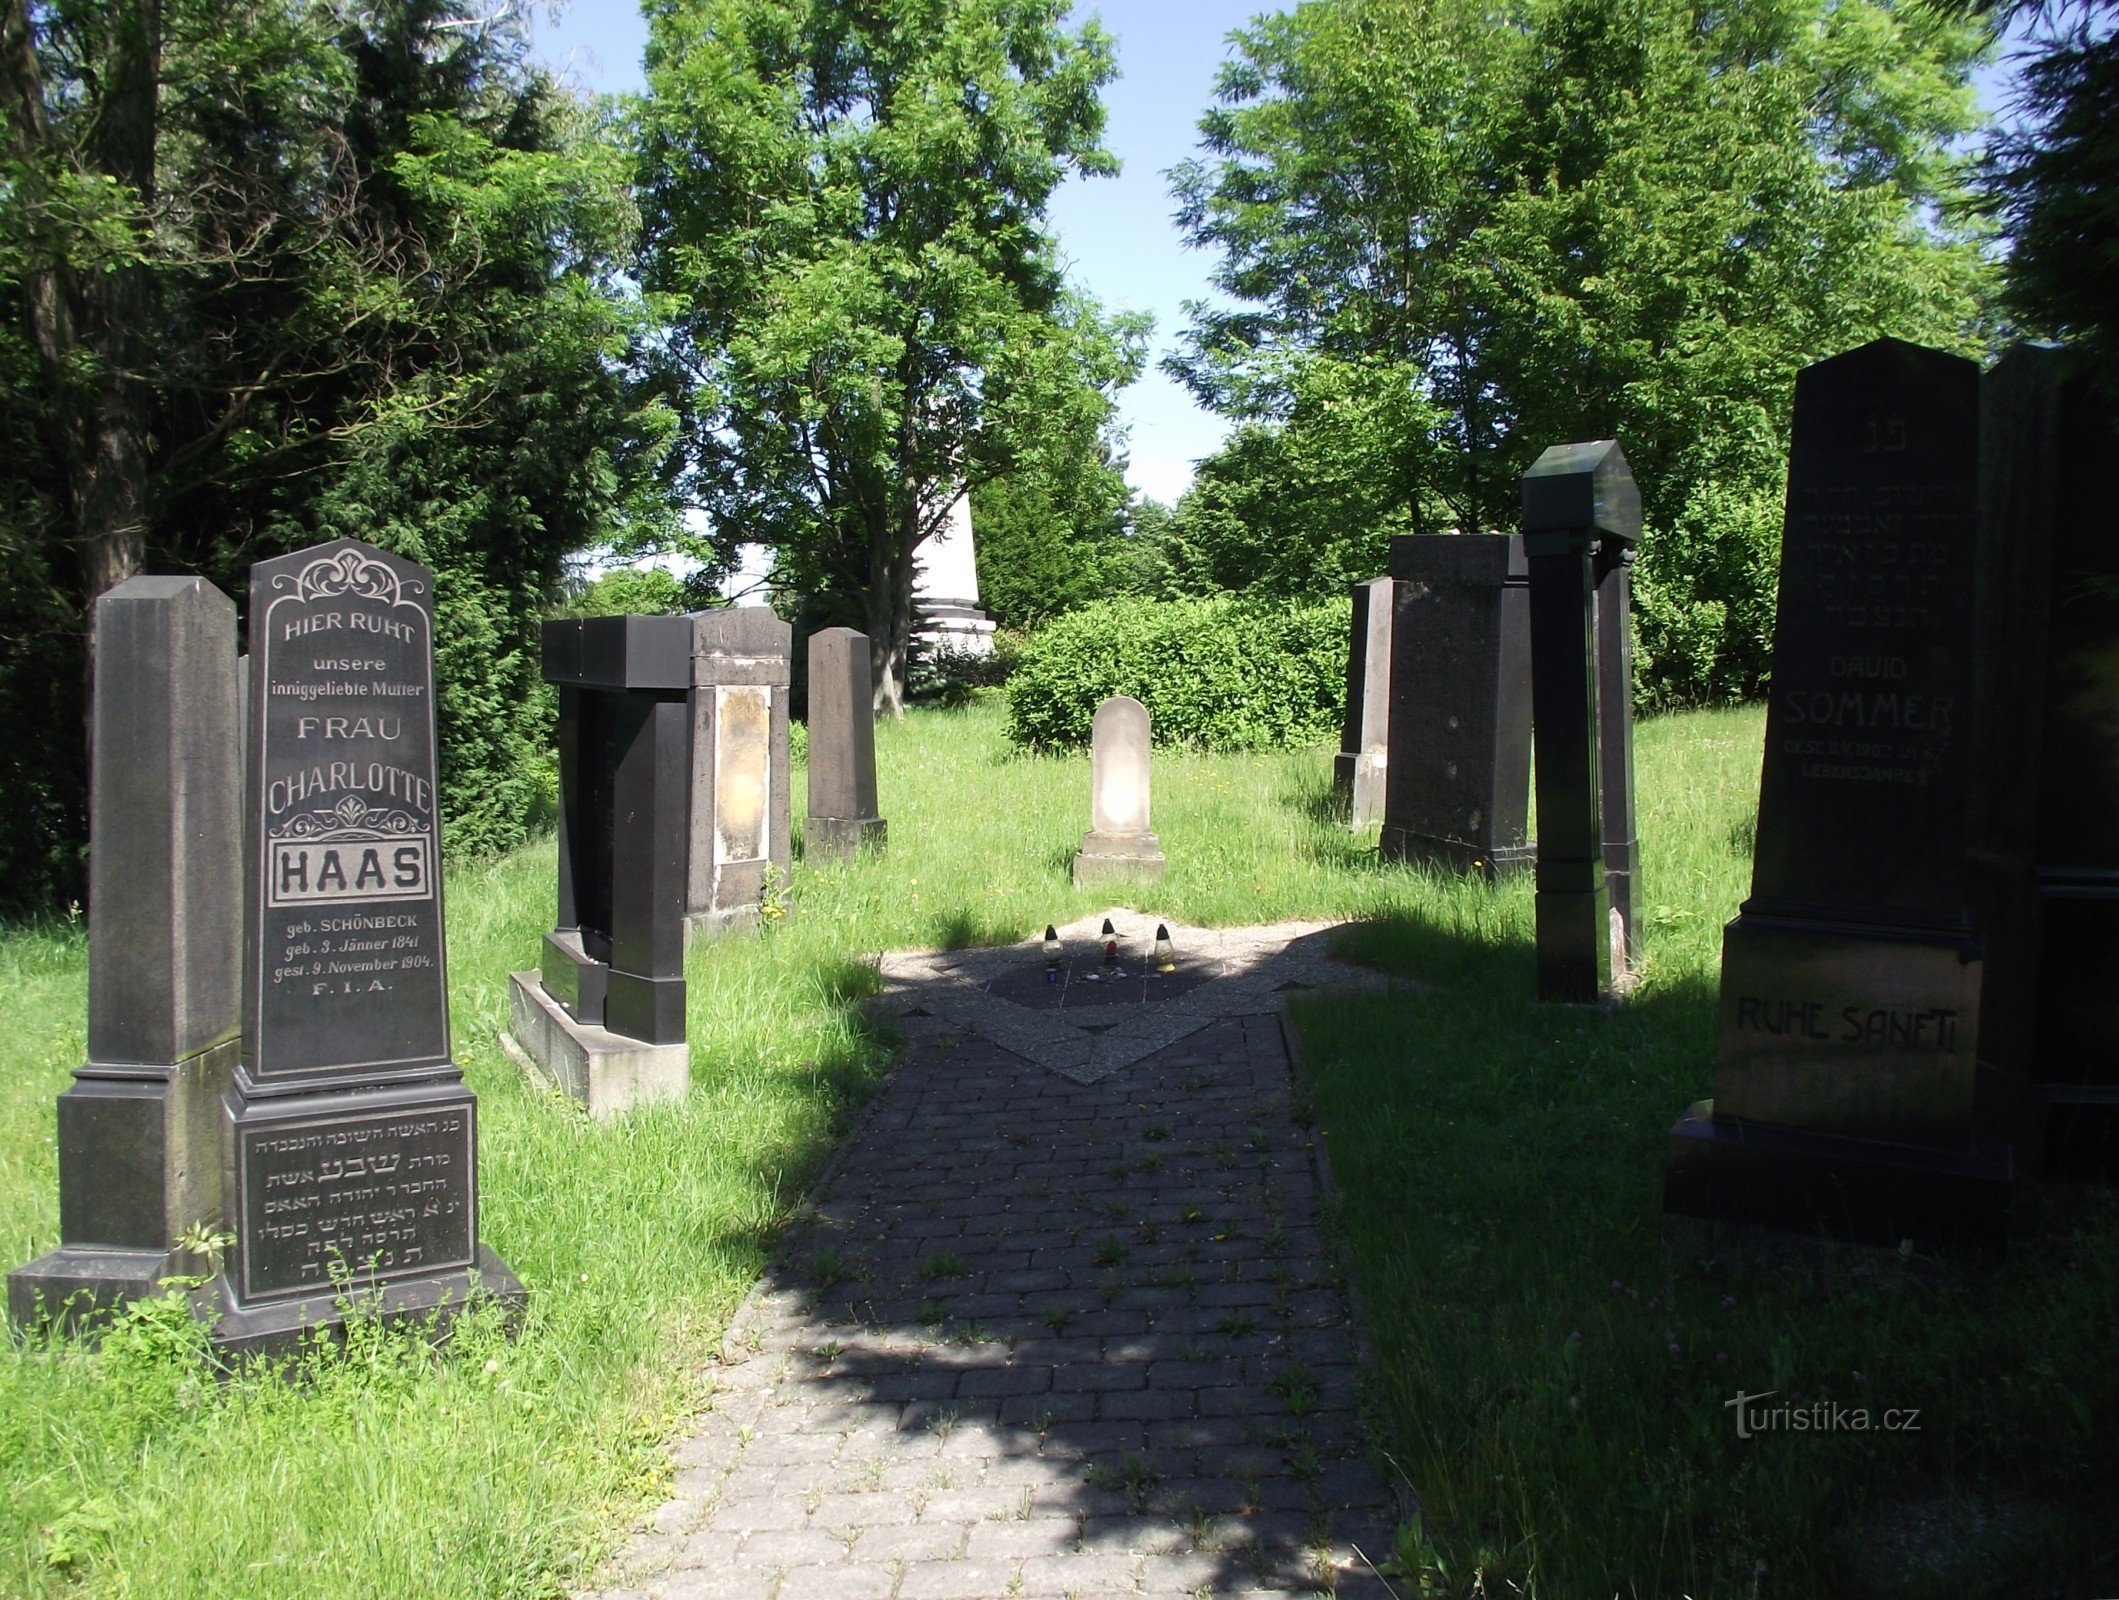 Valašské Meziříčí – judisk kyrkogård